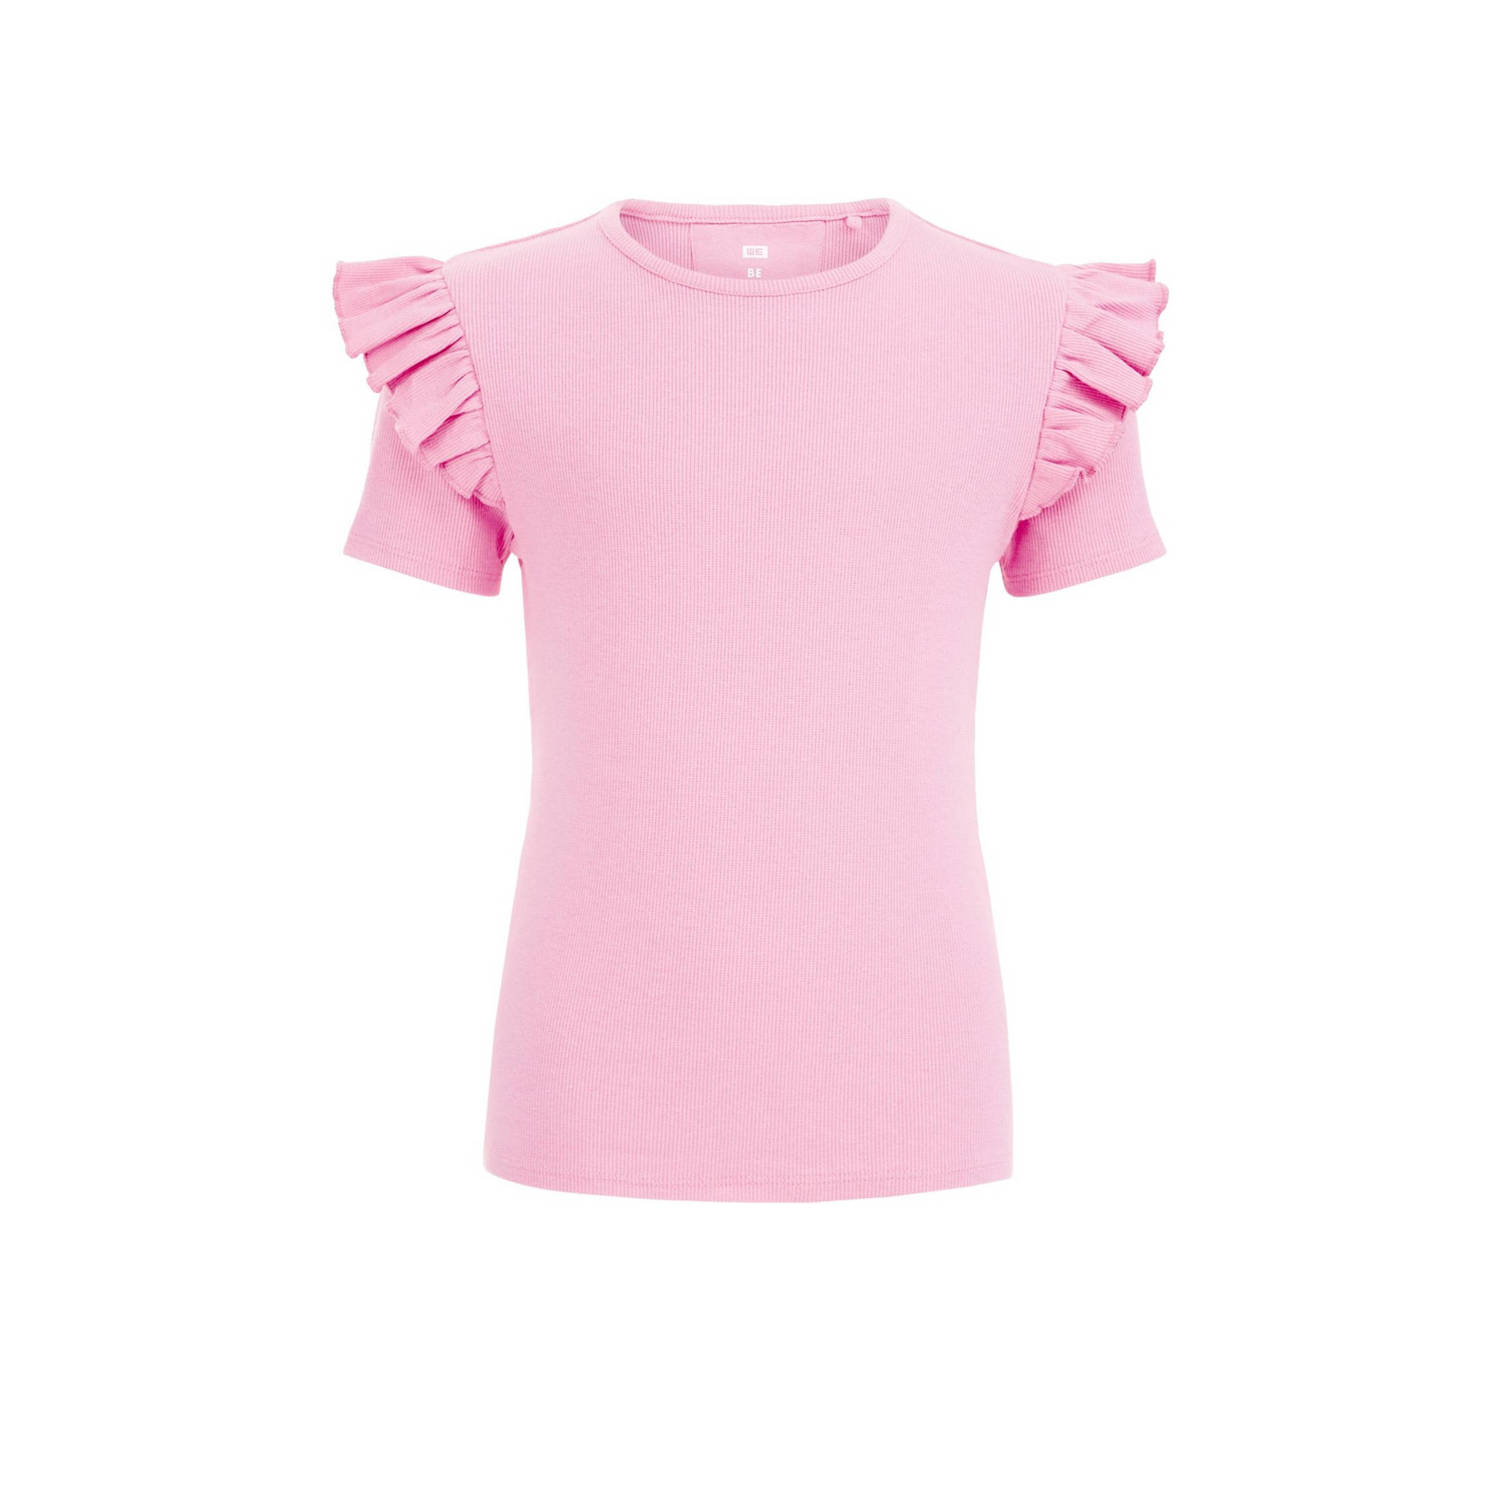 WE Fashion T-shirt roze Meisjes Stretchkatoen Ronde hals Effen 110 116